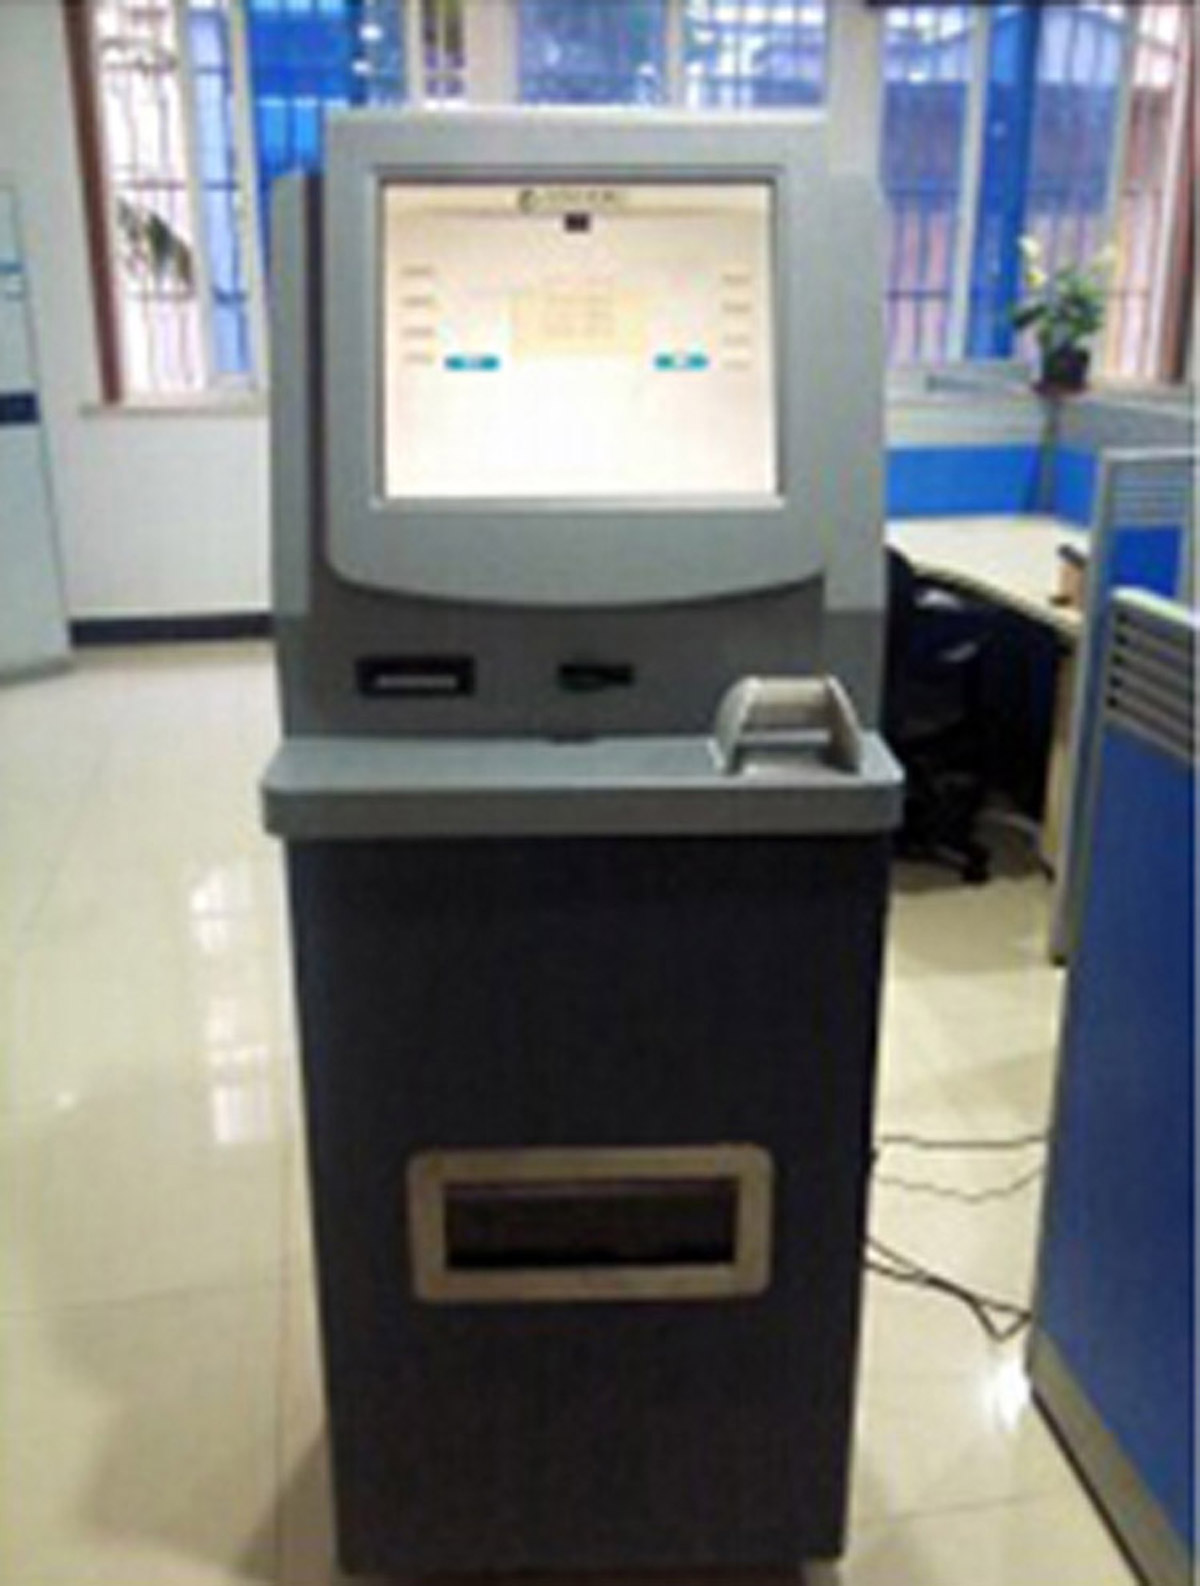 琅琊模拟ATM提款操作